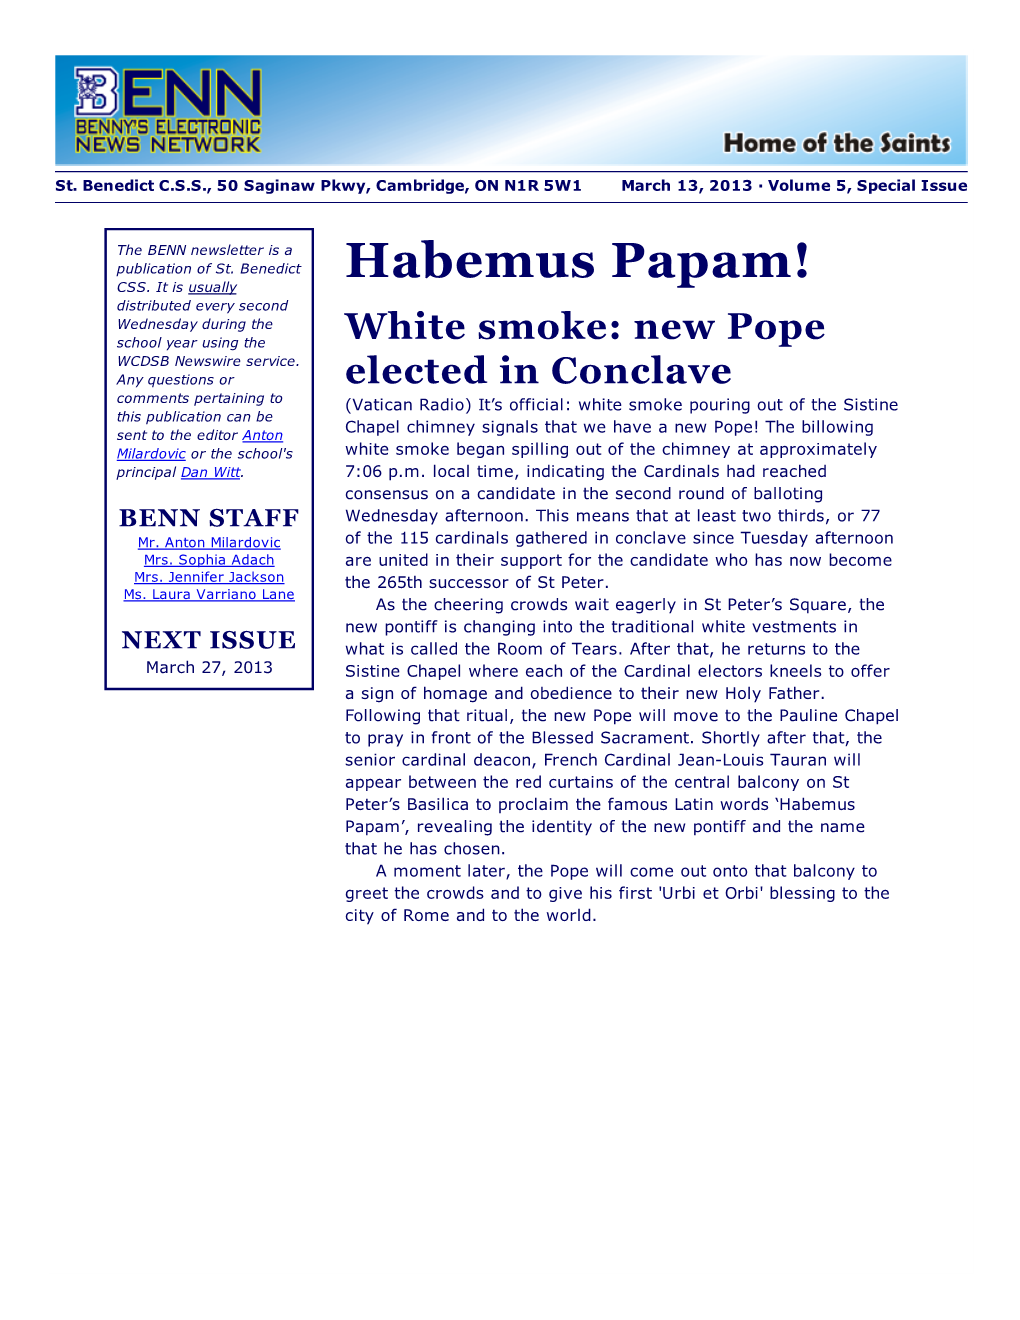 Habemus Papam! CSS